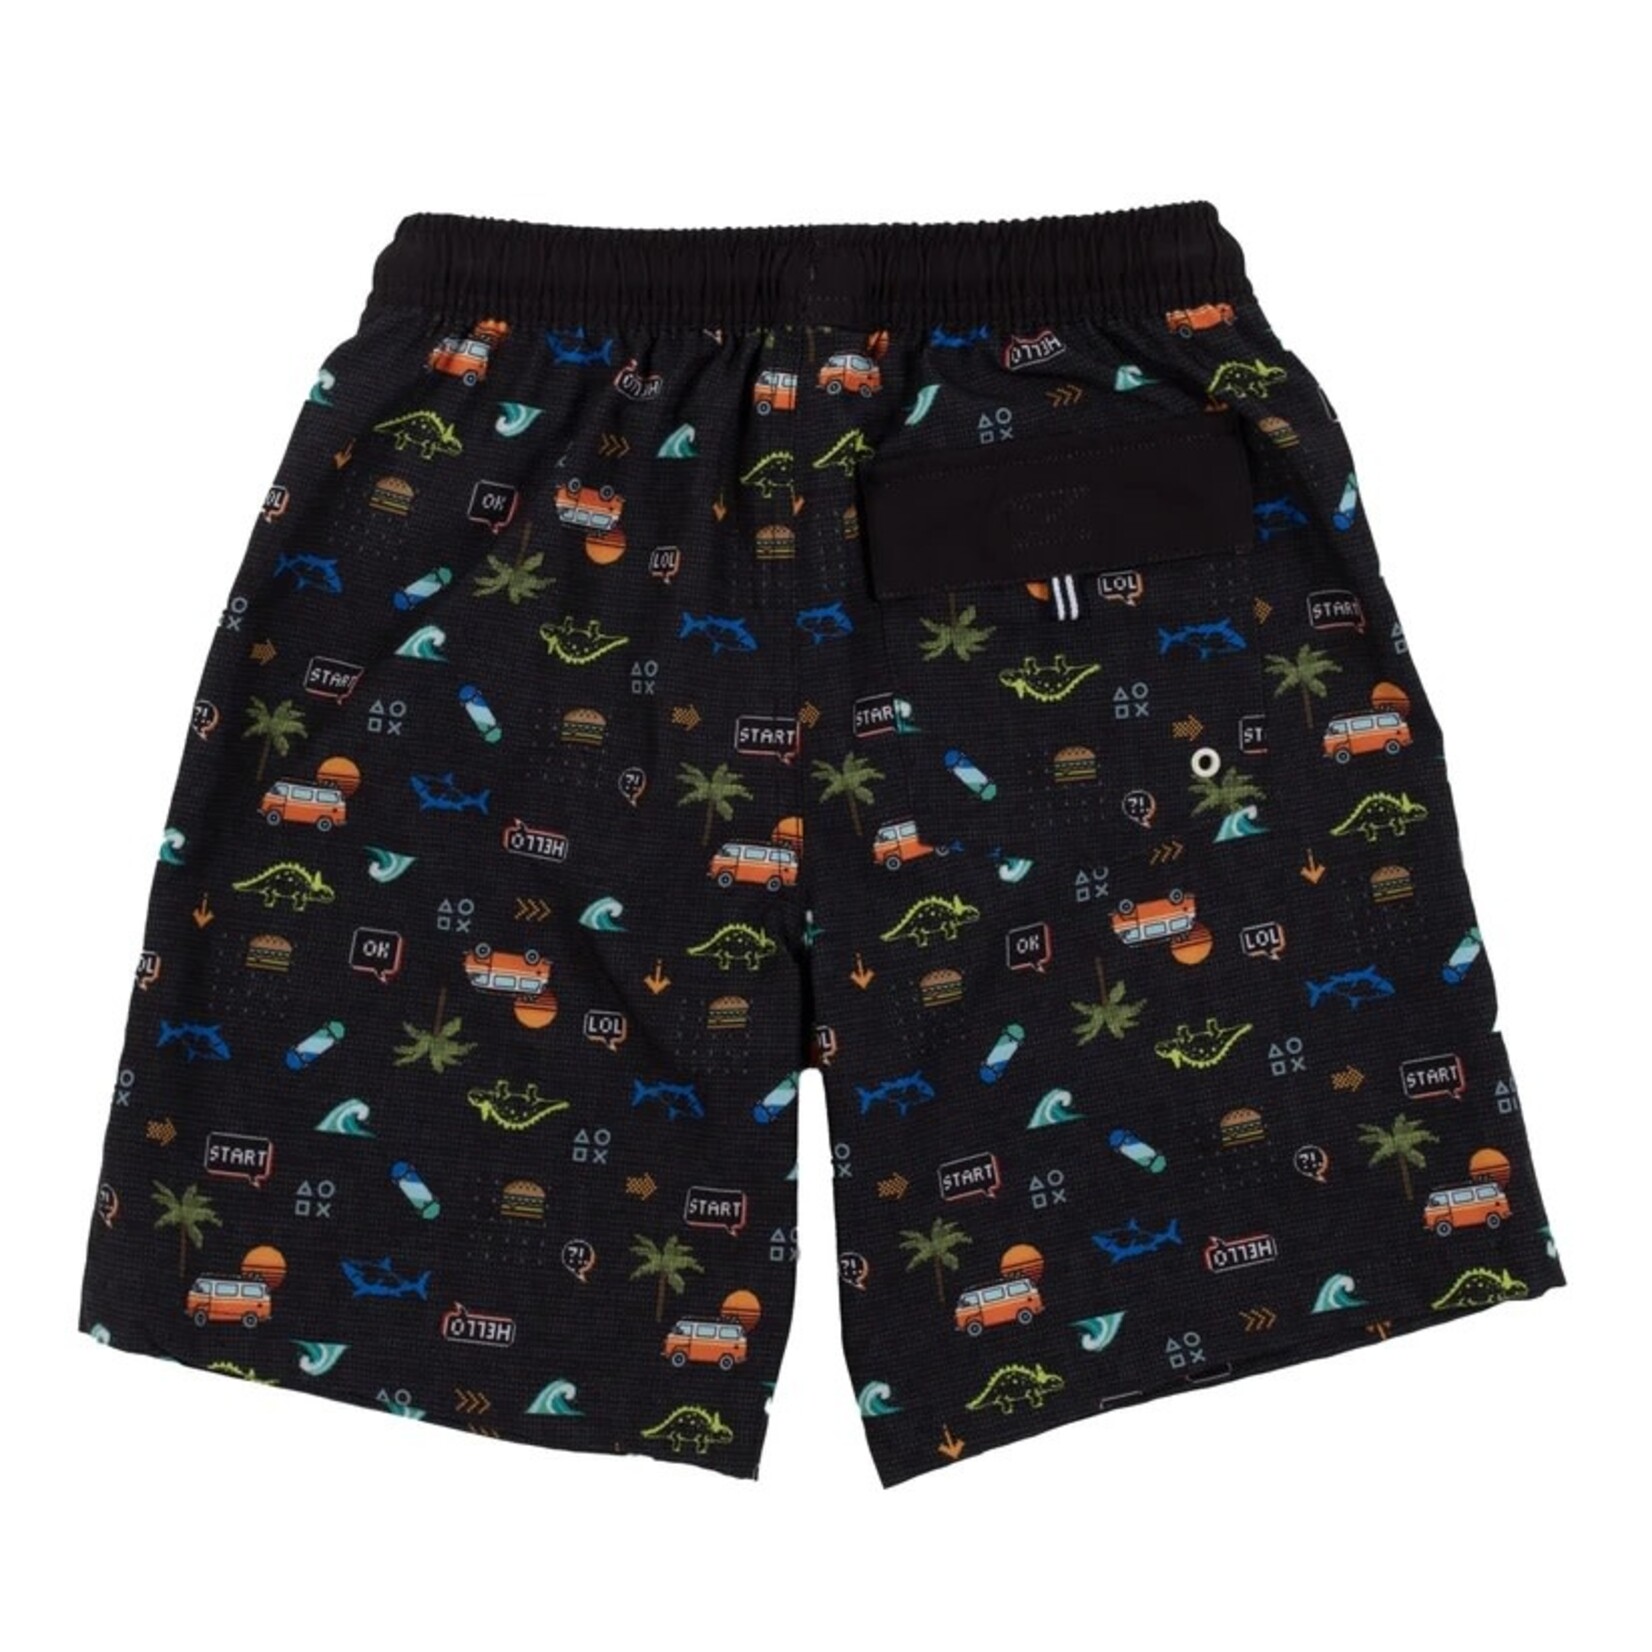 Nanö NANÖ - Black swimming shorts with van, waves and dinosaur print